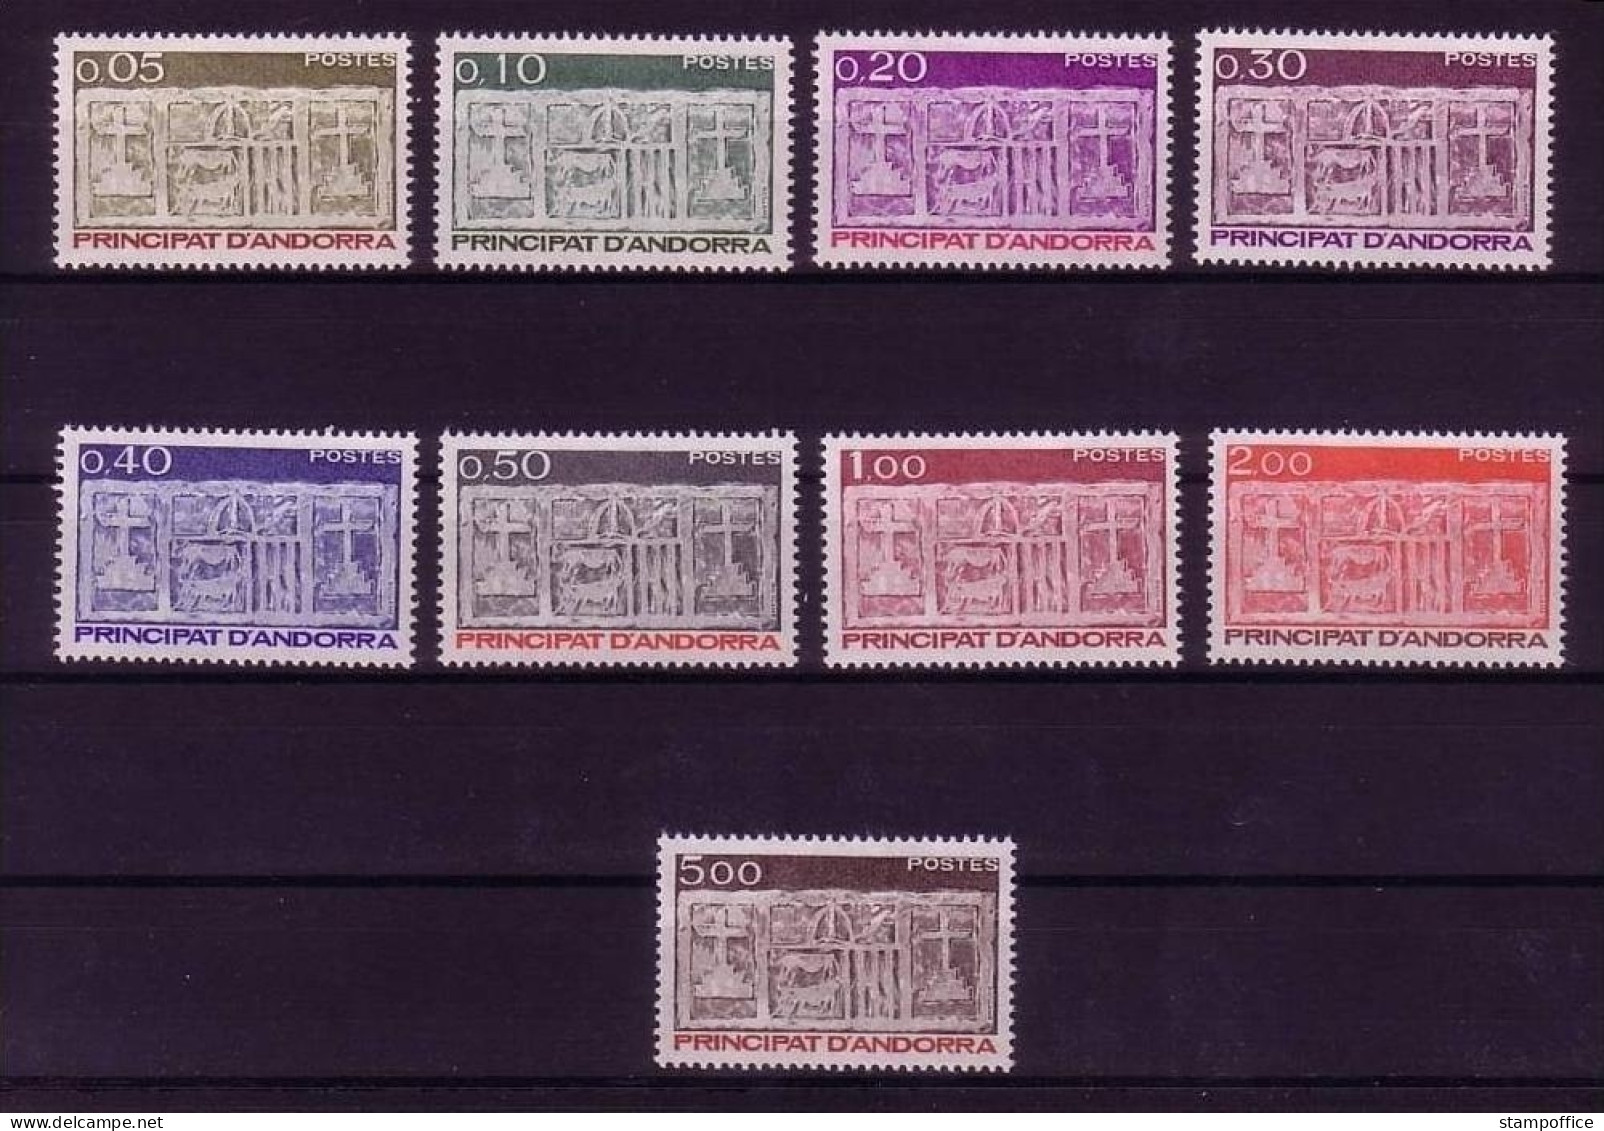 ANDORRA FRANZÖSISCH MI-NR. 337-345 POSTFRISCH(MINT) FREIMARKEN WAPPEN 1983 - Stamps